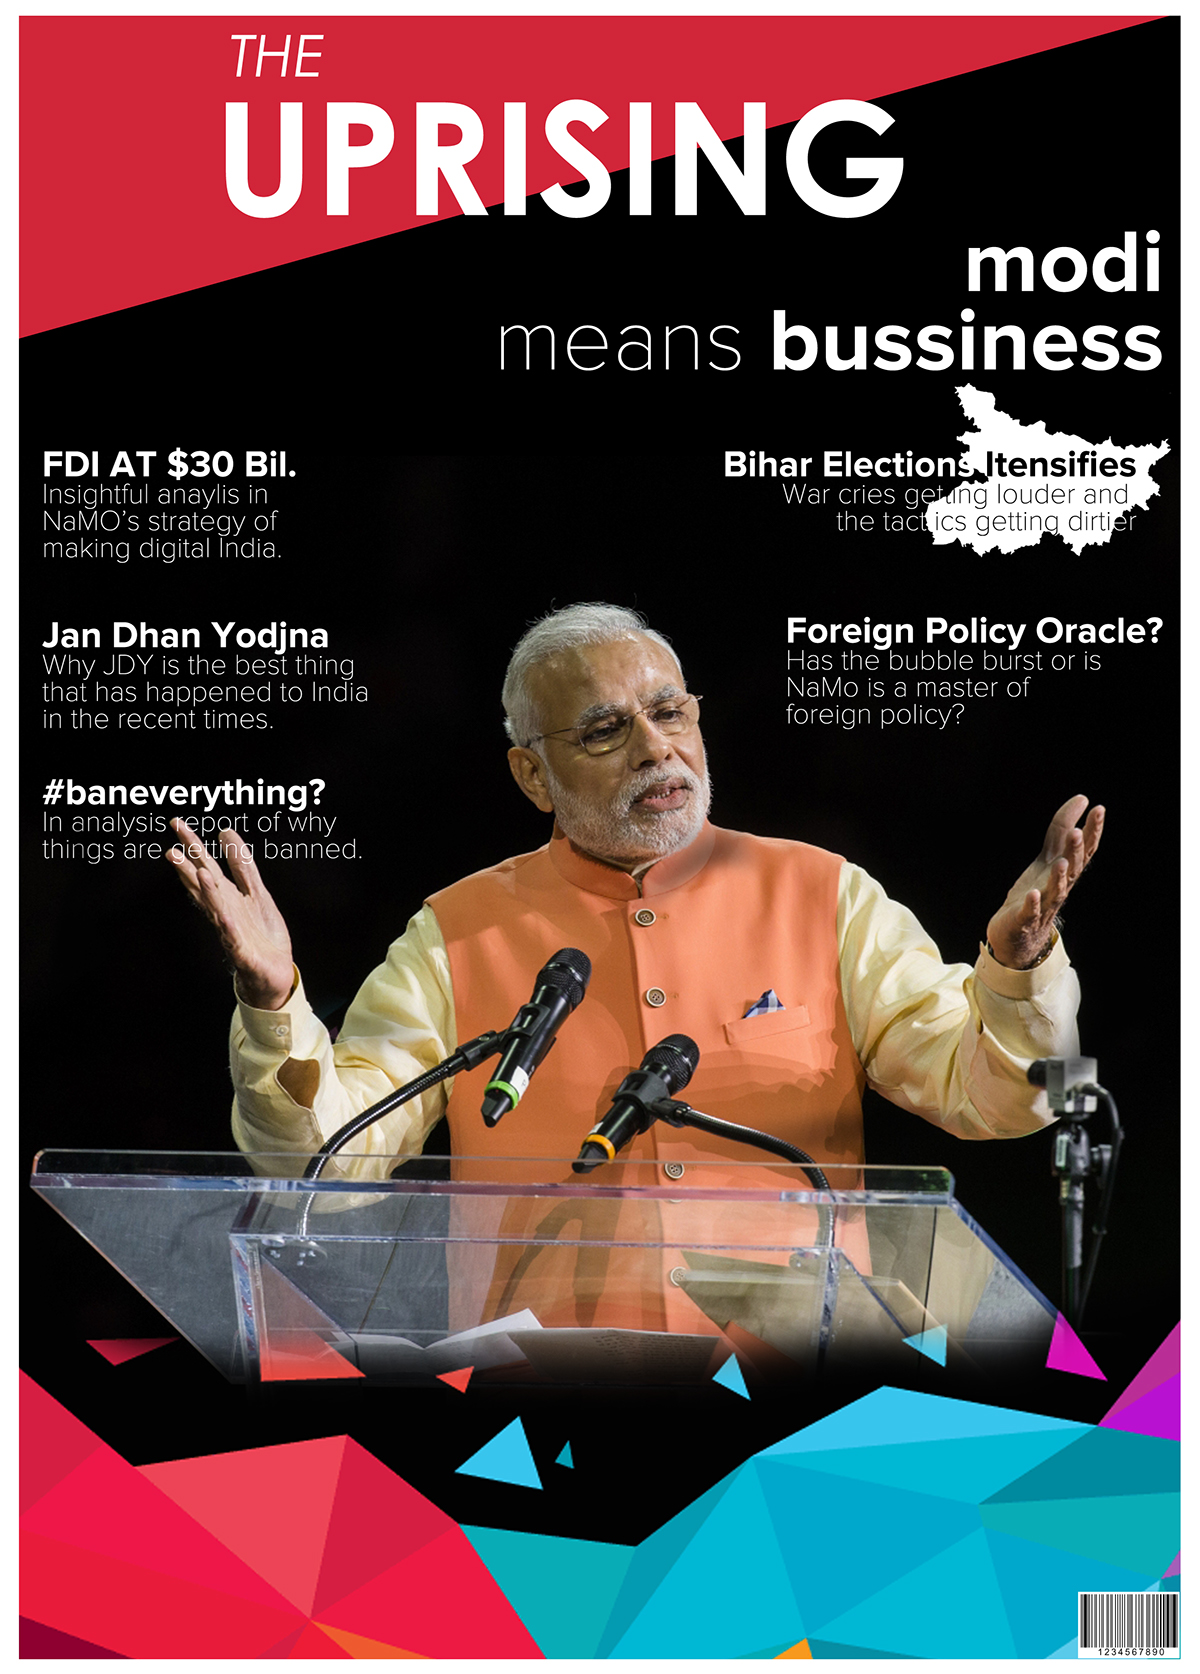 Modi magazine cover poster contest technovit chennai